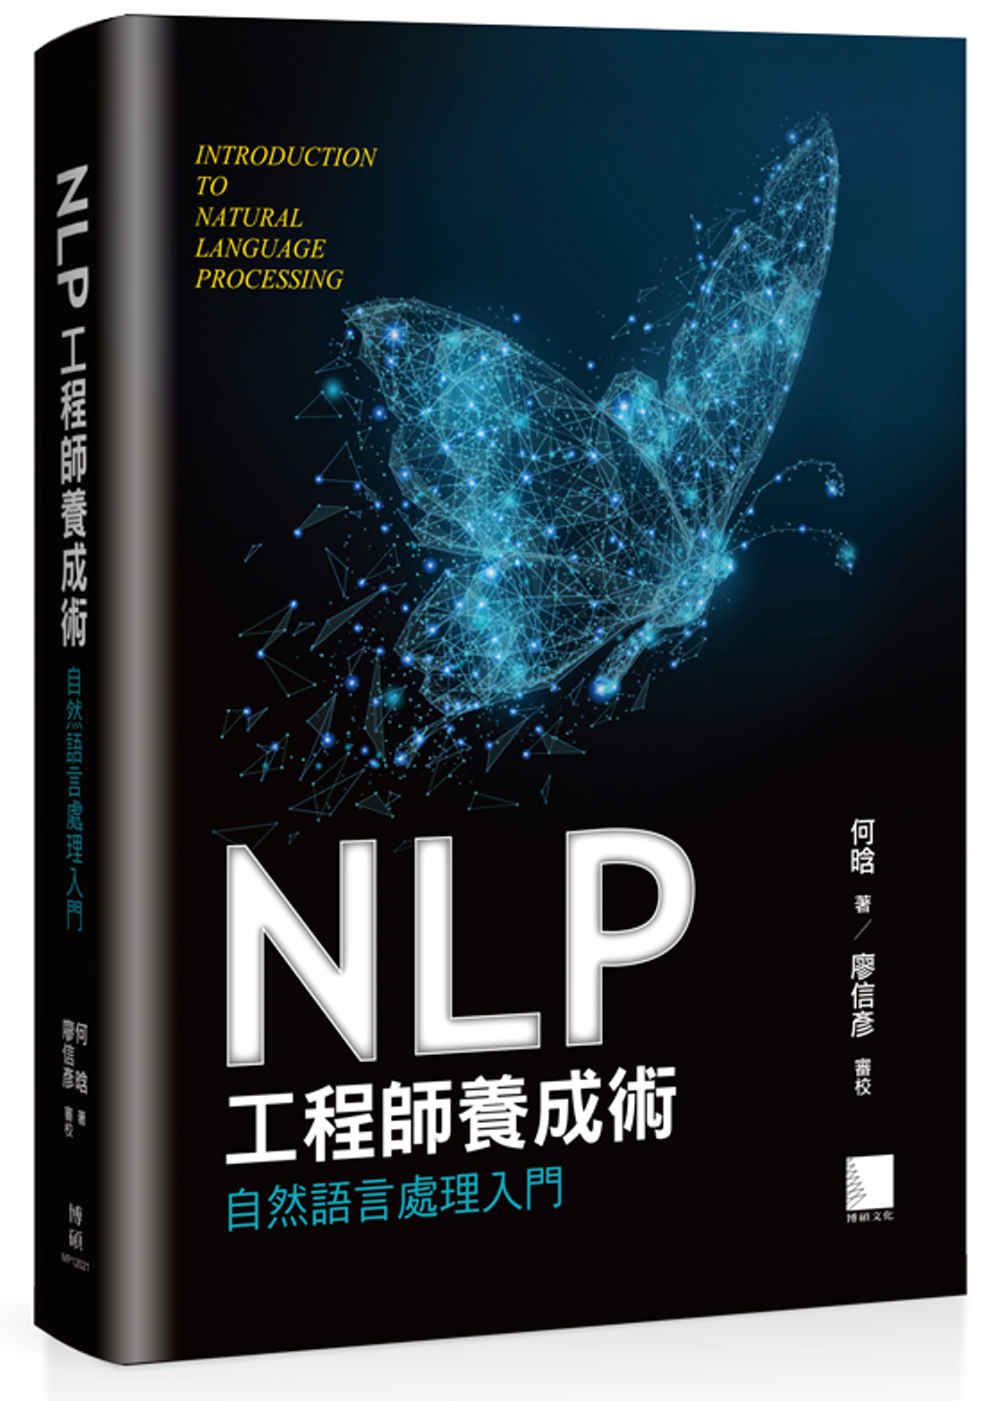 NLP工程師養成術：自然語言處理入門